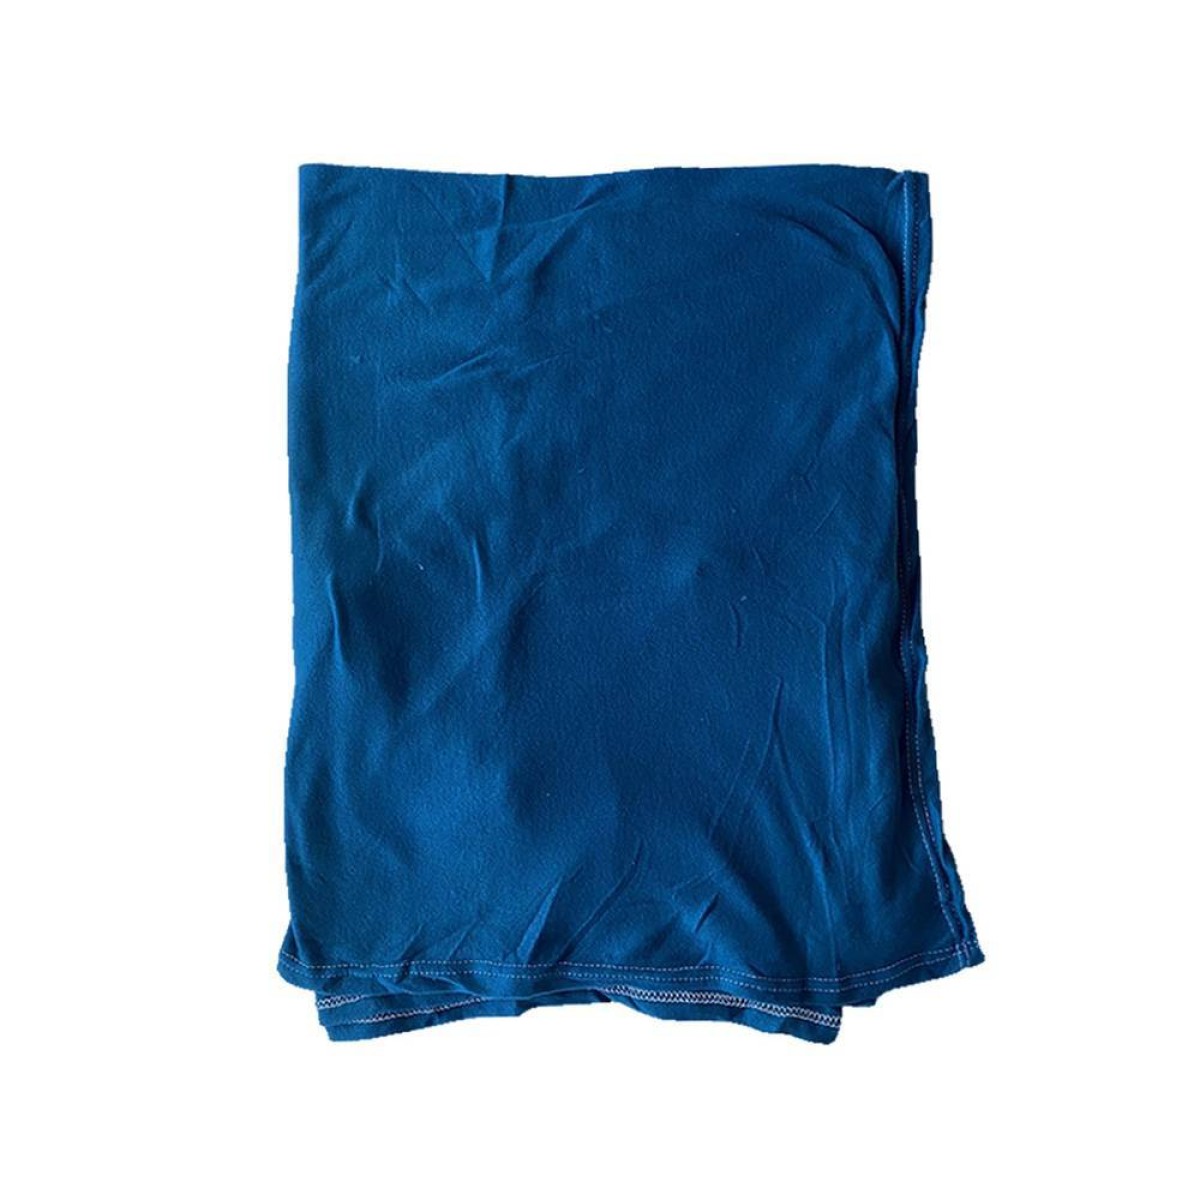 Κουβέρτα Fleece Μονή 150x220cm μπλε χρώμα TNS 39-950-2070-1